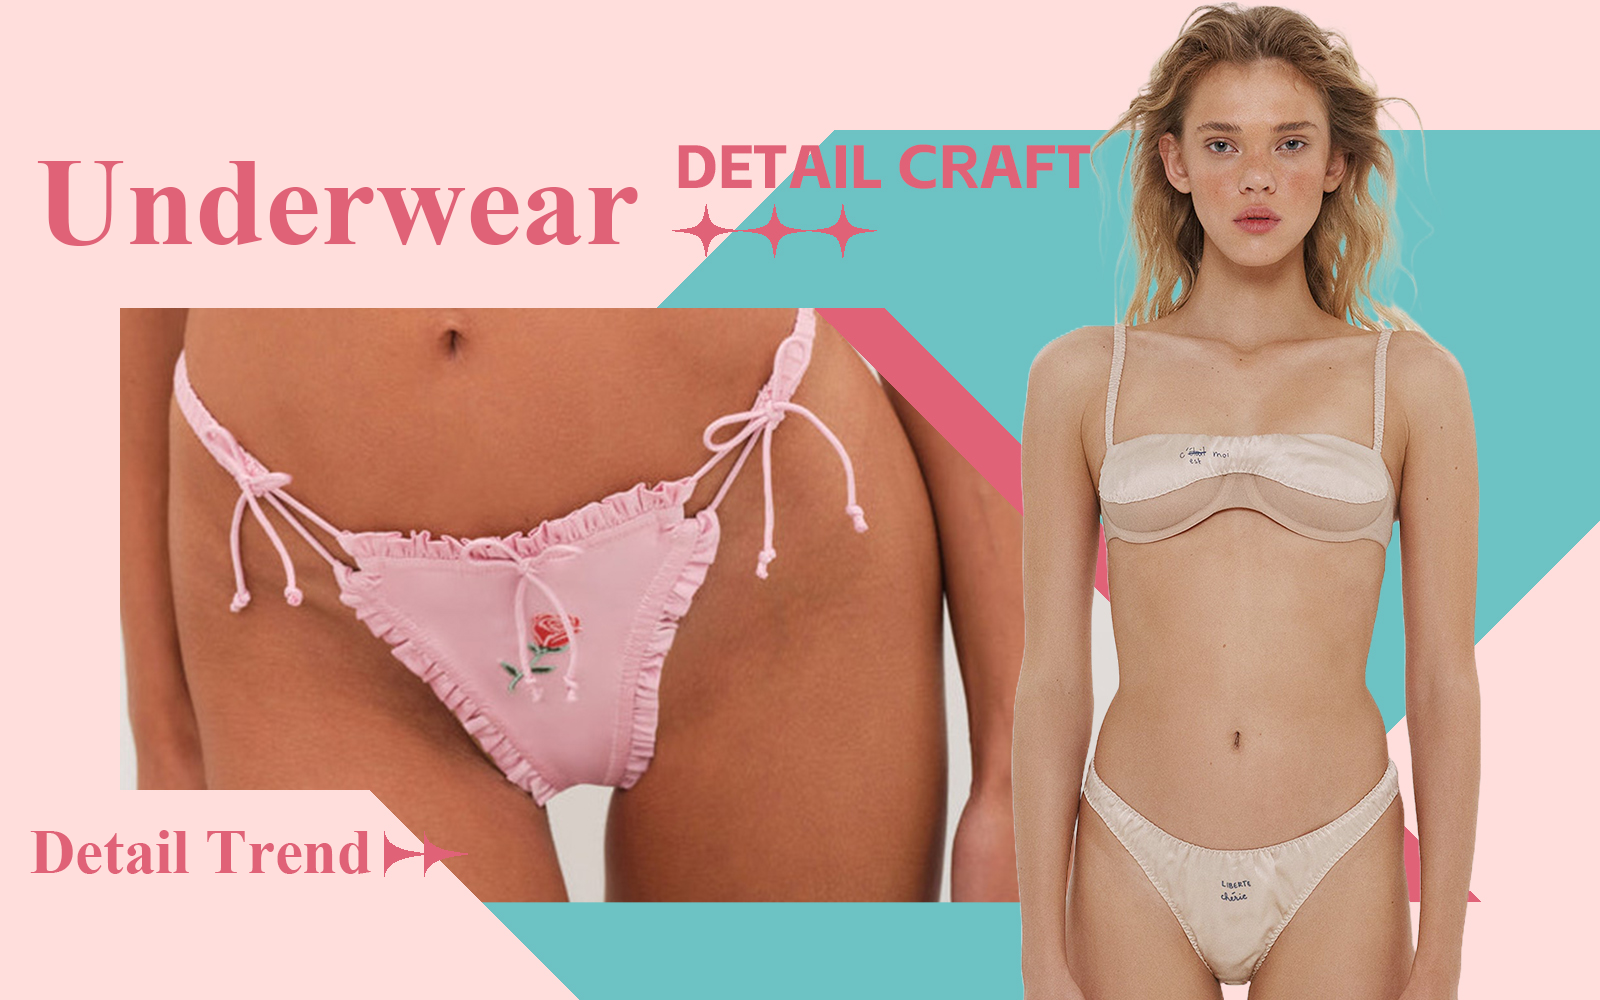 The Detail & Craft Trend for Women's Underwear